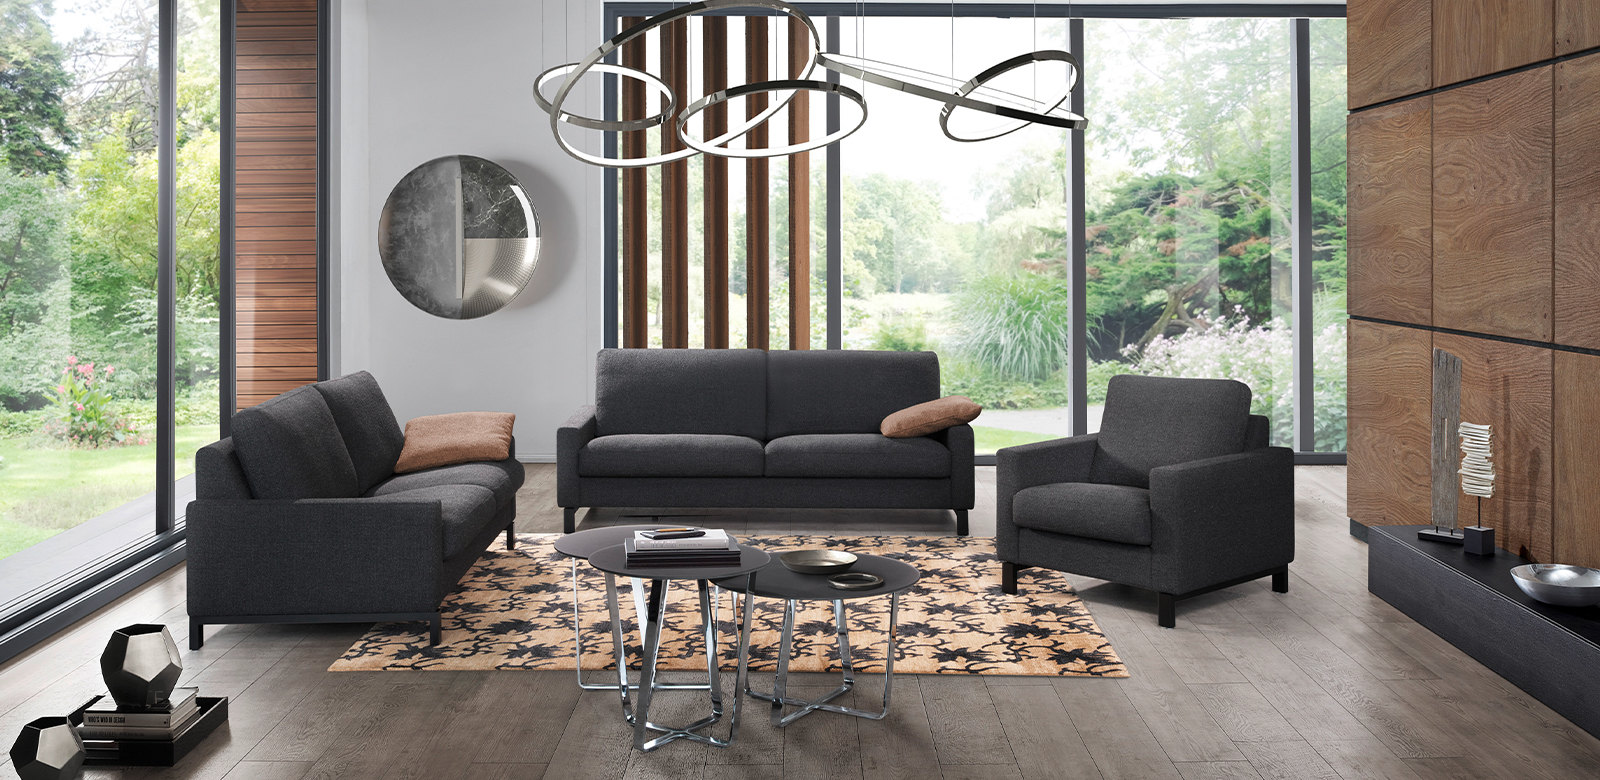 Modernes Wohnzimmer mit Holzelementen und zwei CL500 Sofas und Sessel in grau-schwarzem Stoff.